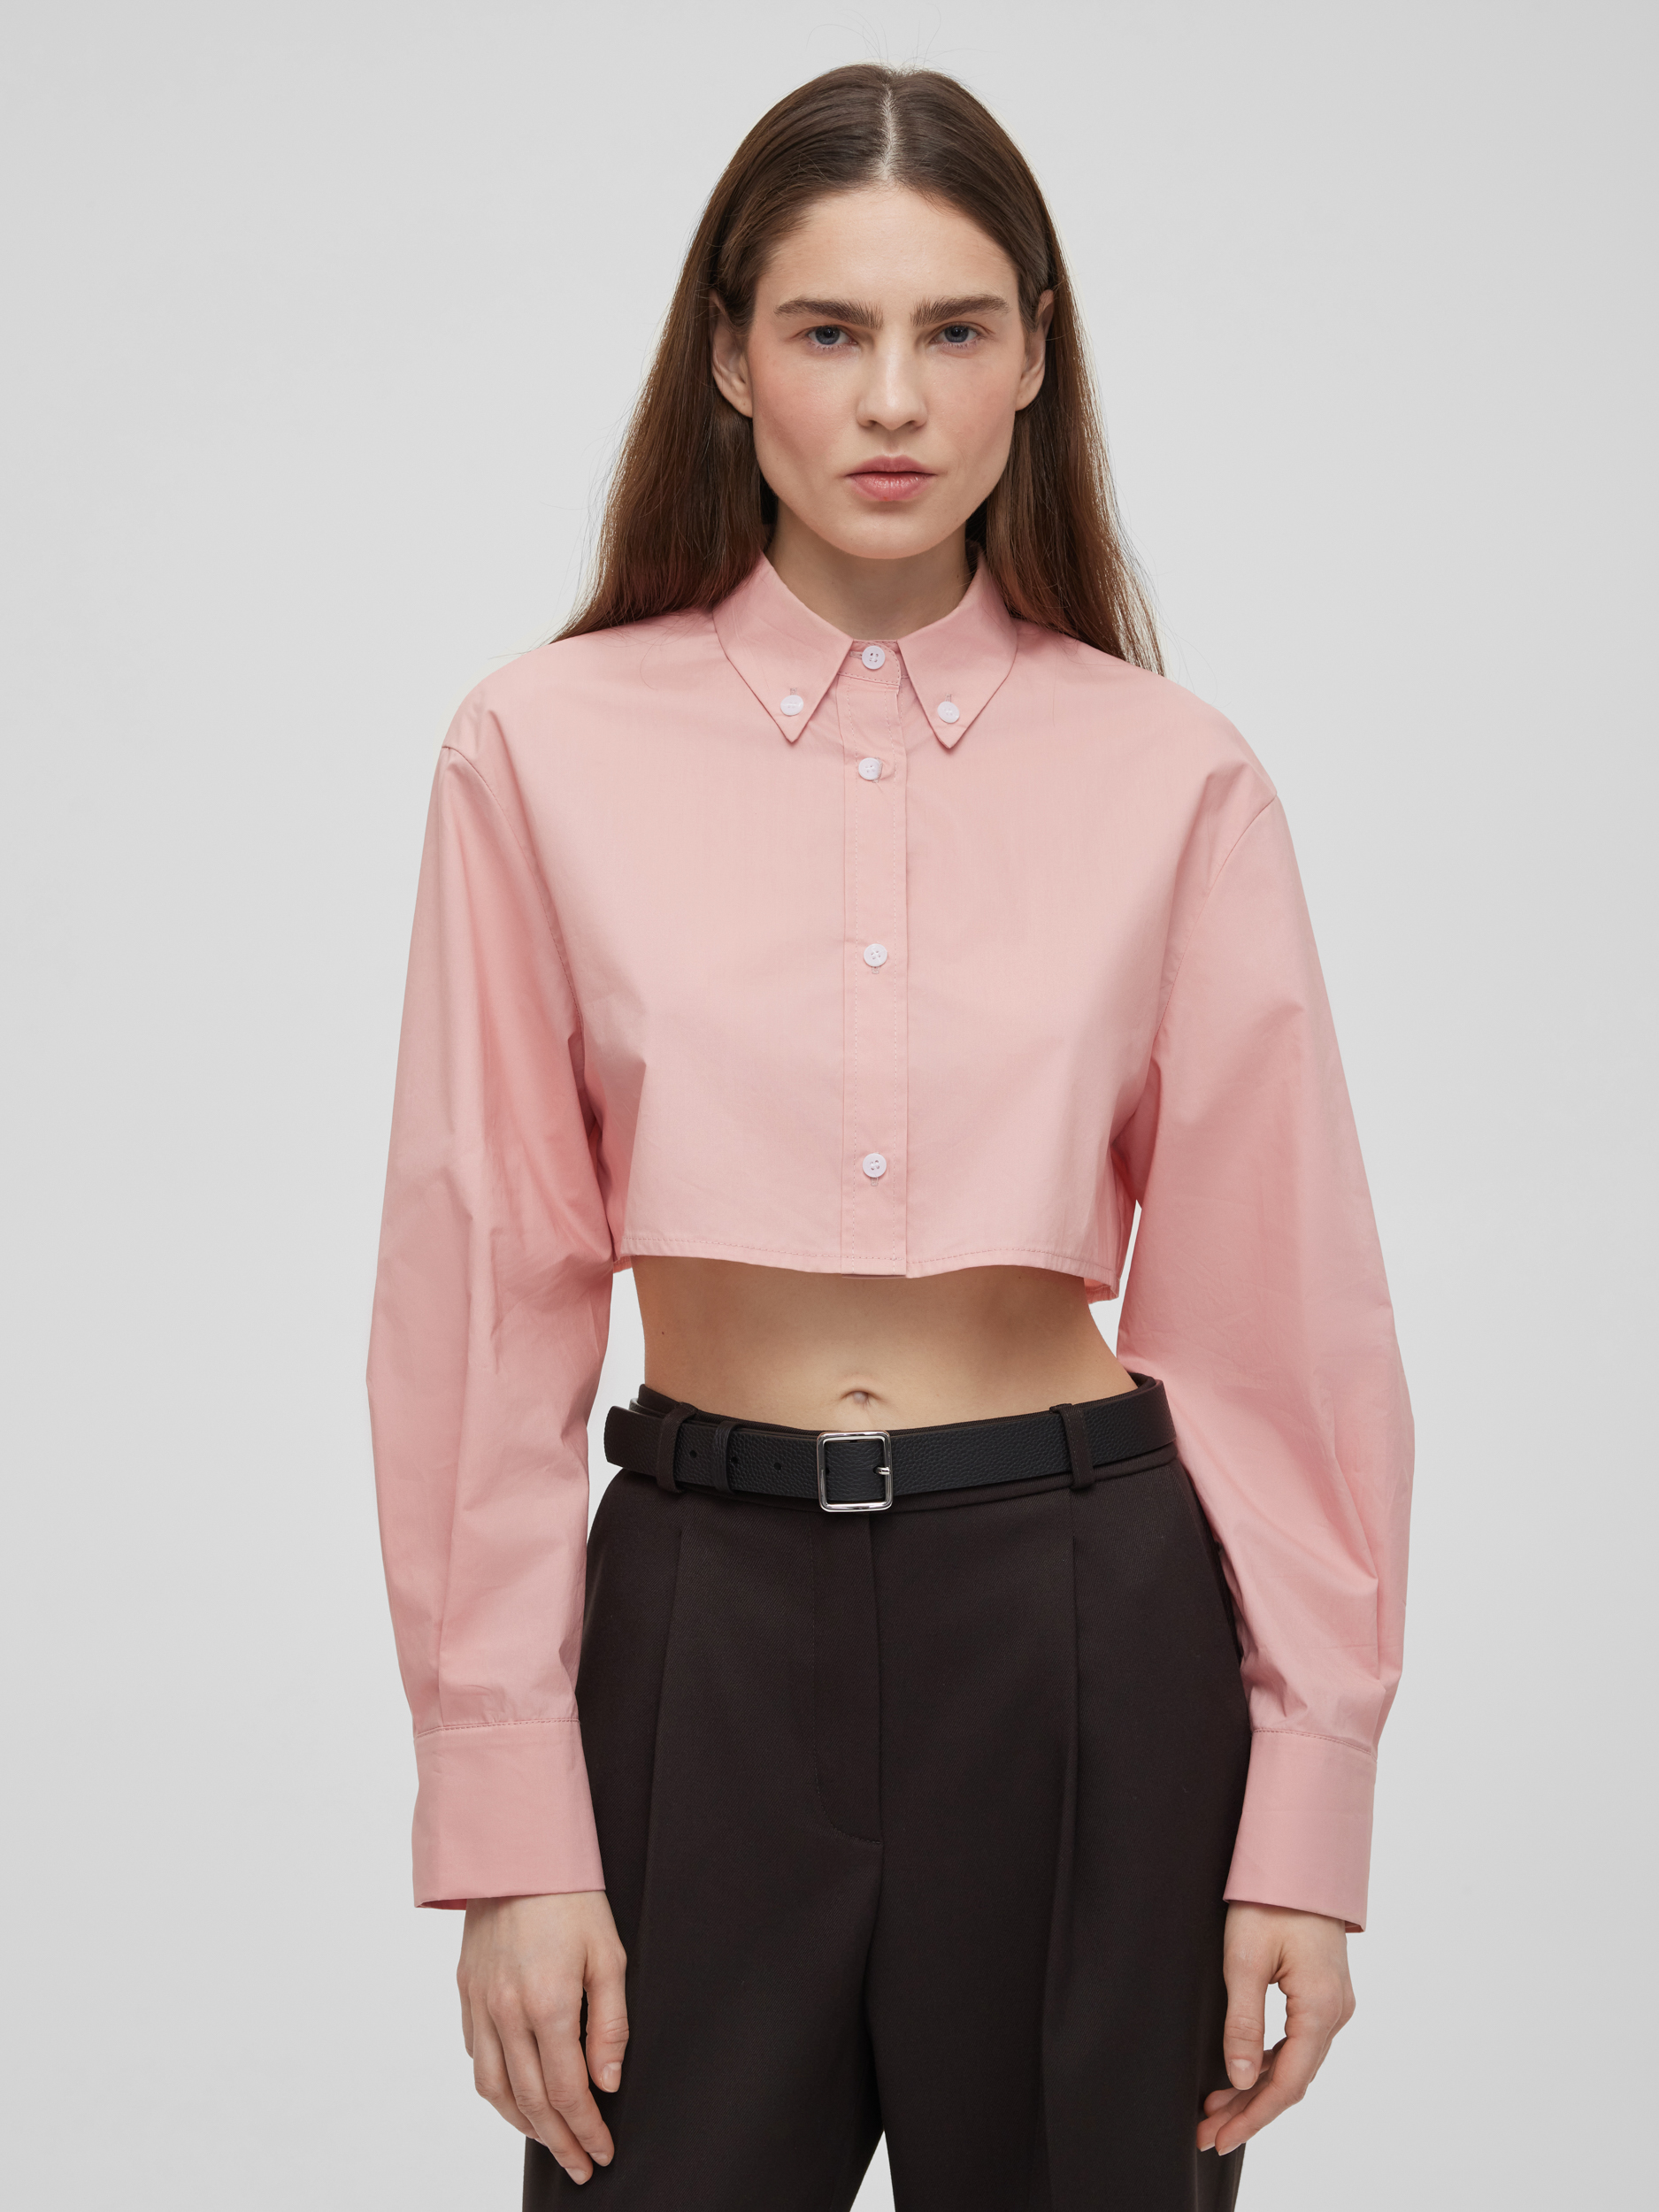 цена Рубашка женская короткая из хлопка, цвет – розовый